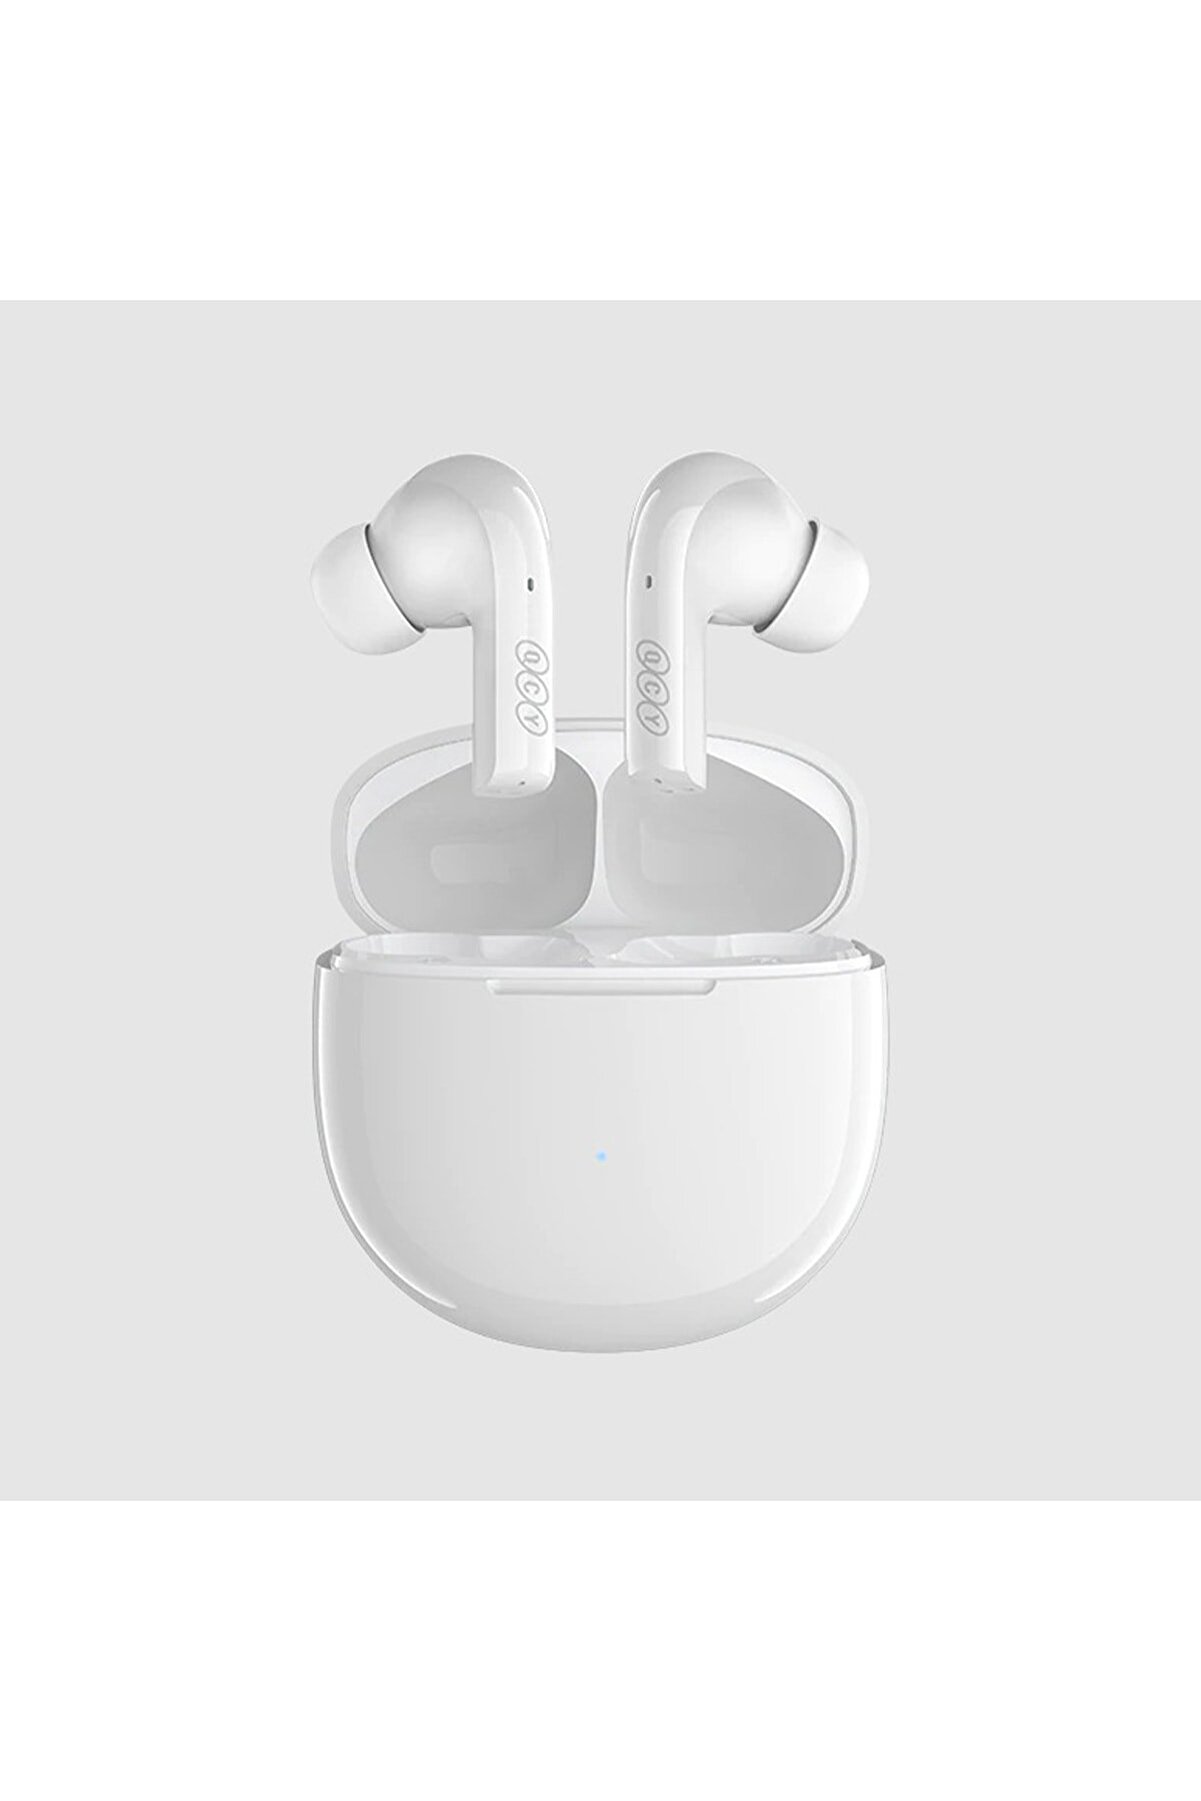 Qcy T18 Melobuds Çift Cihaz Desteği Ve Oyun Modlu Tws Beyaz Kulaklık Bluetooth 5.2